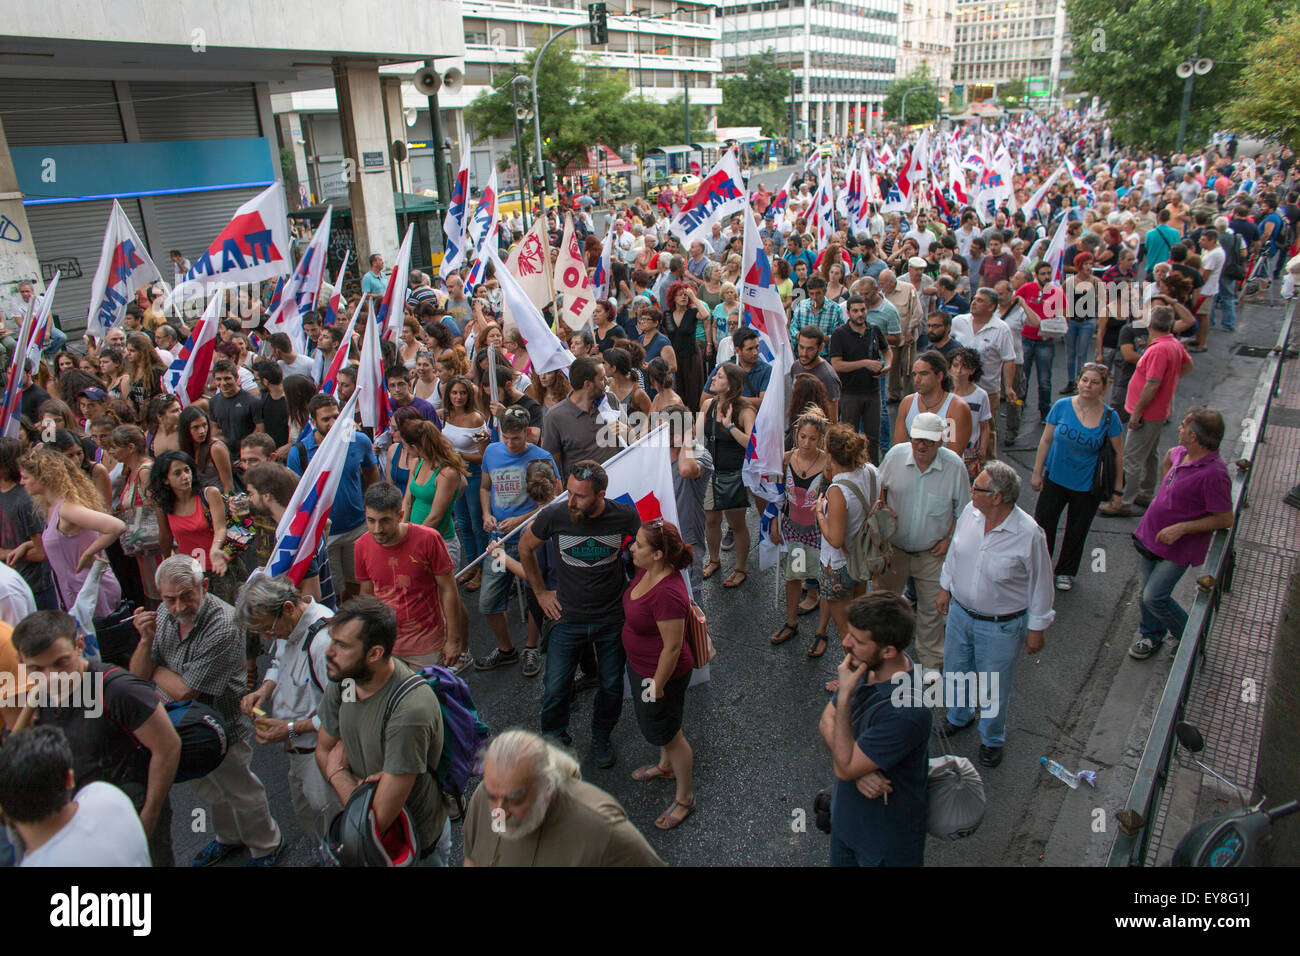 Tausende Menschen demonstrieren in Athen gegen die EU verhängt die Erhöhung der Mehrwertsteuer auf Produkte und Dienstleistungen. Das griechische Parlament v Stockfoto